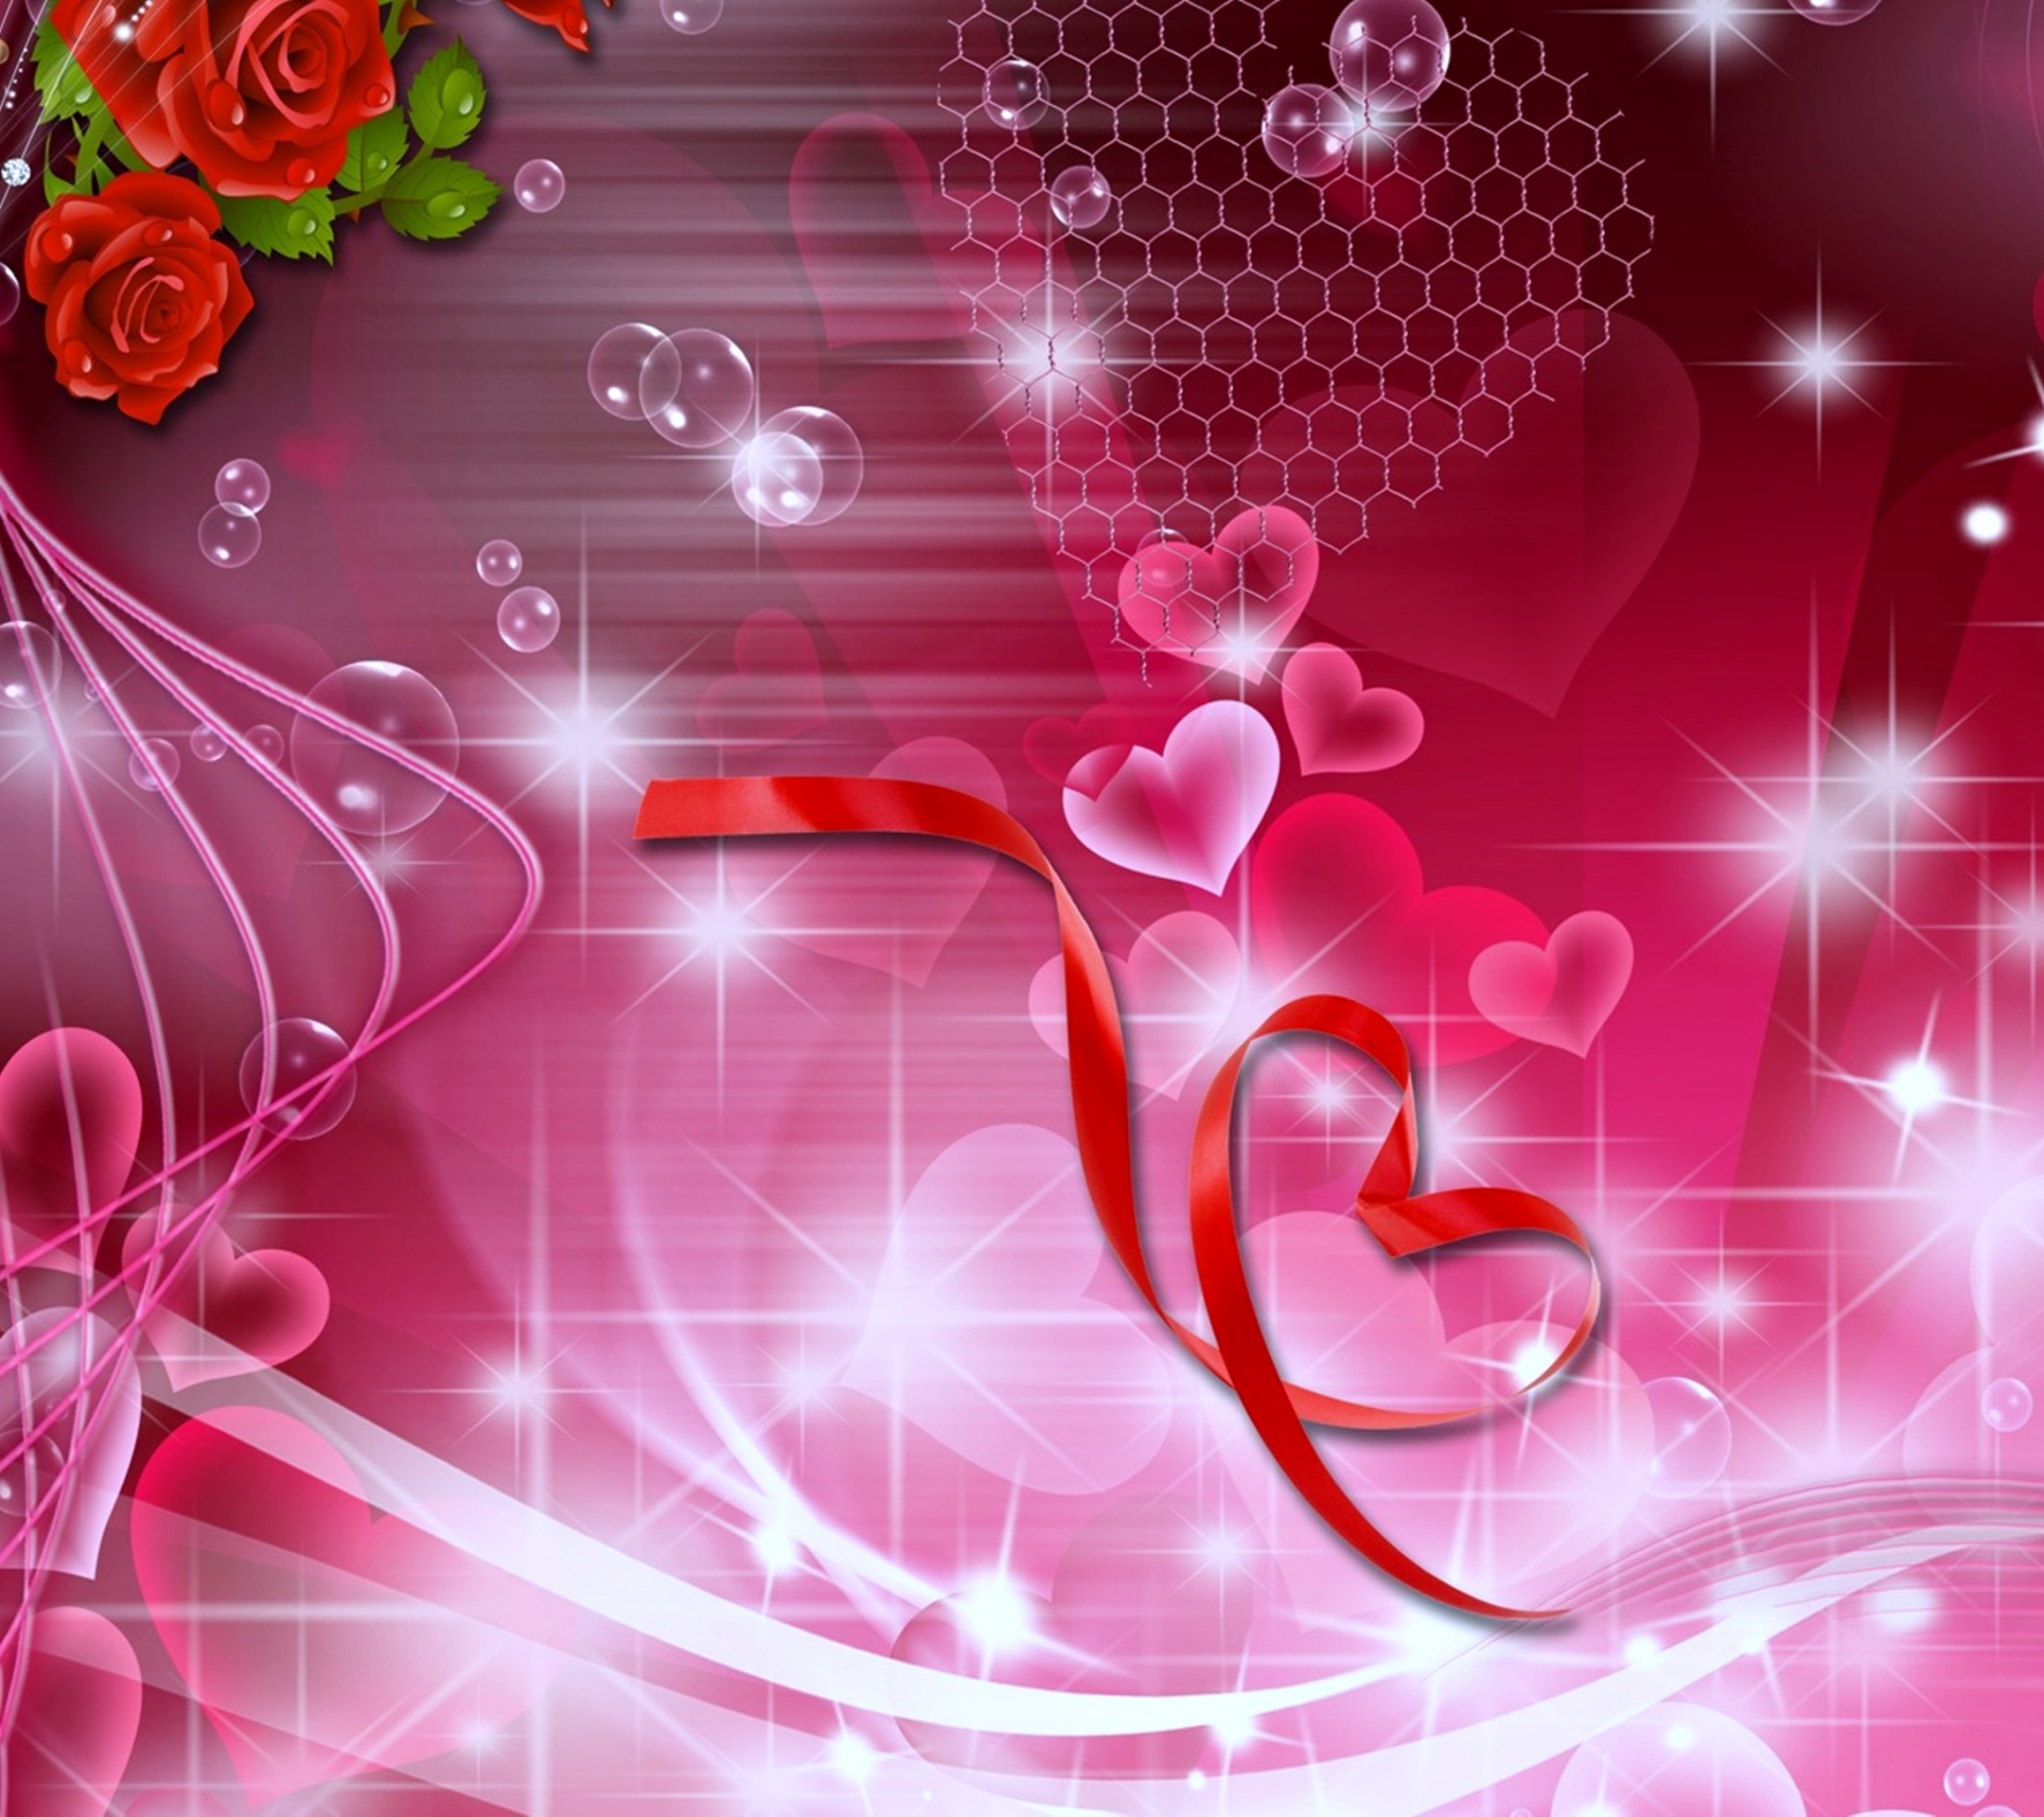 Roses Heart Noble  Free photo on Pixabay  Pixabay